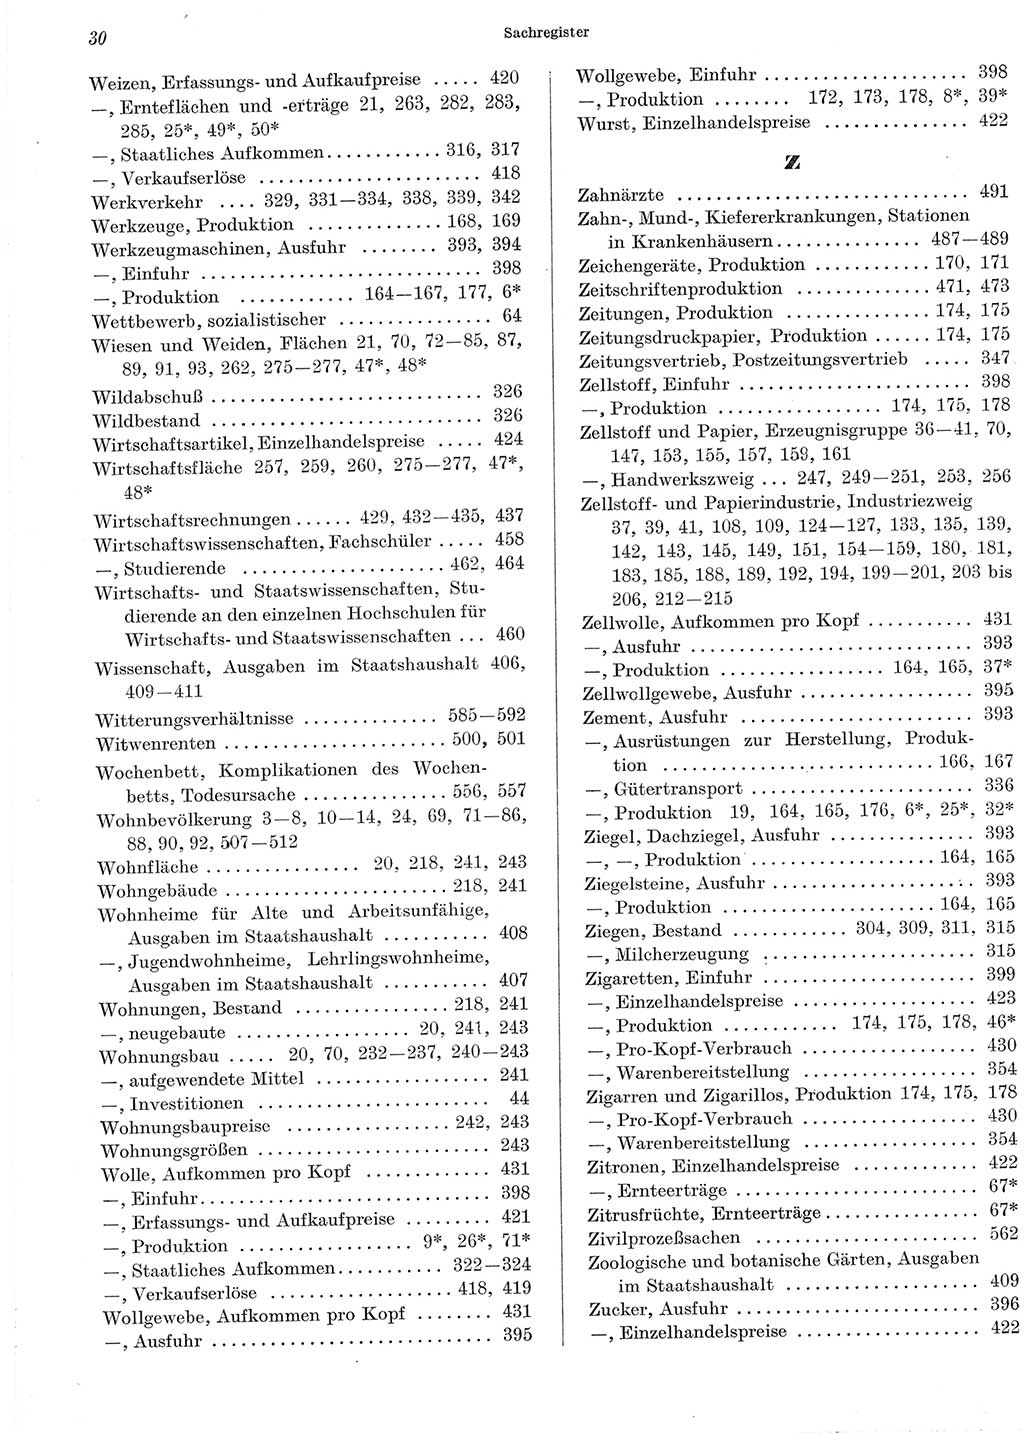 Statistisches Jahrbuch der Deutschen Demokratischen Republik (DDR) 1965, Seite 30 (Stat. Jb. DDR 1965, S. 30)